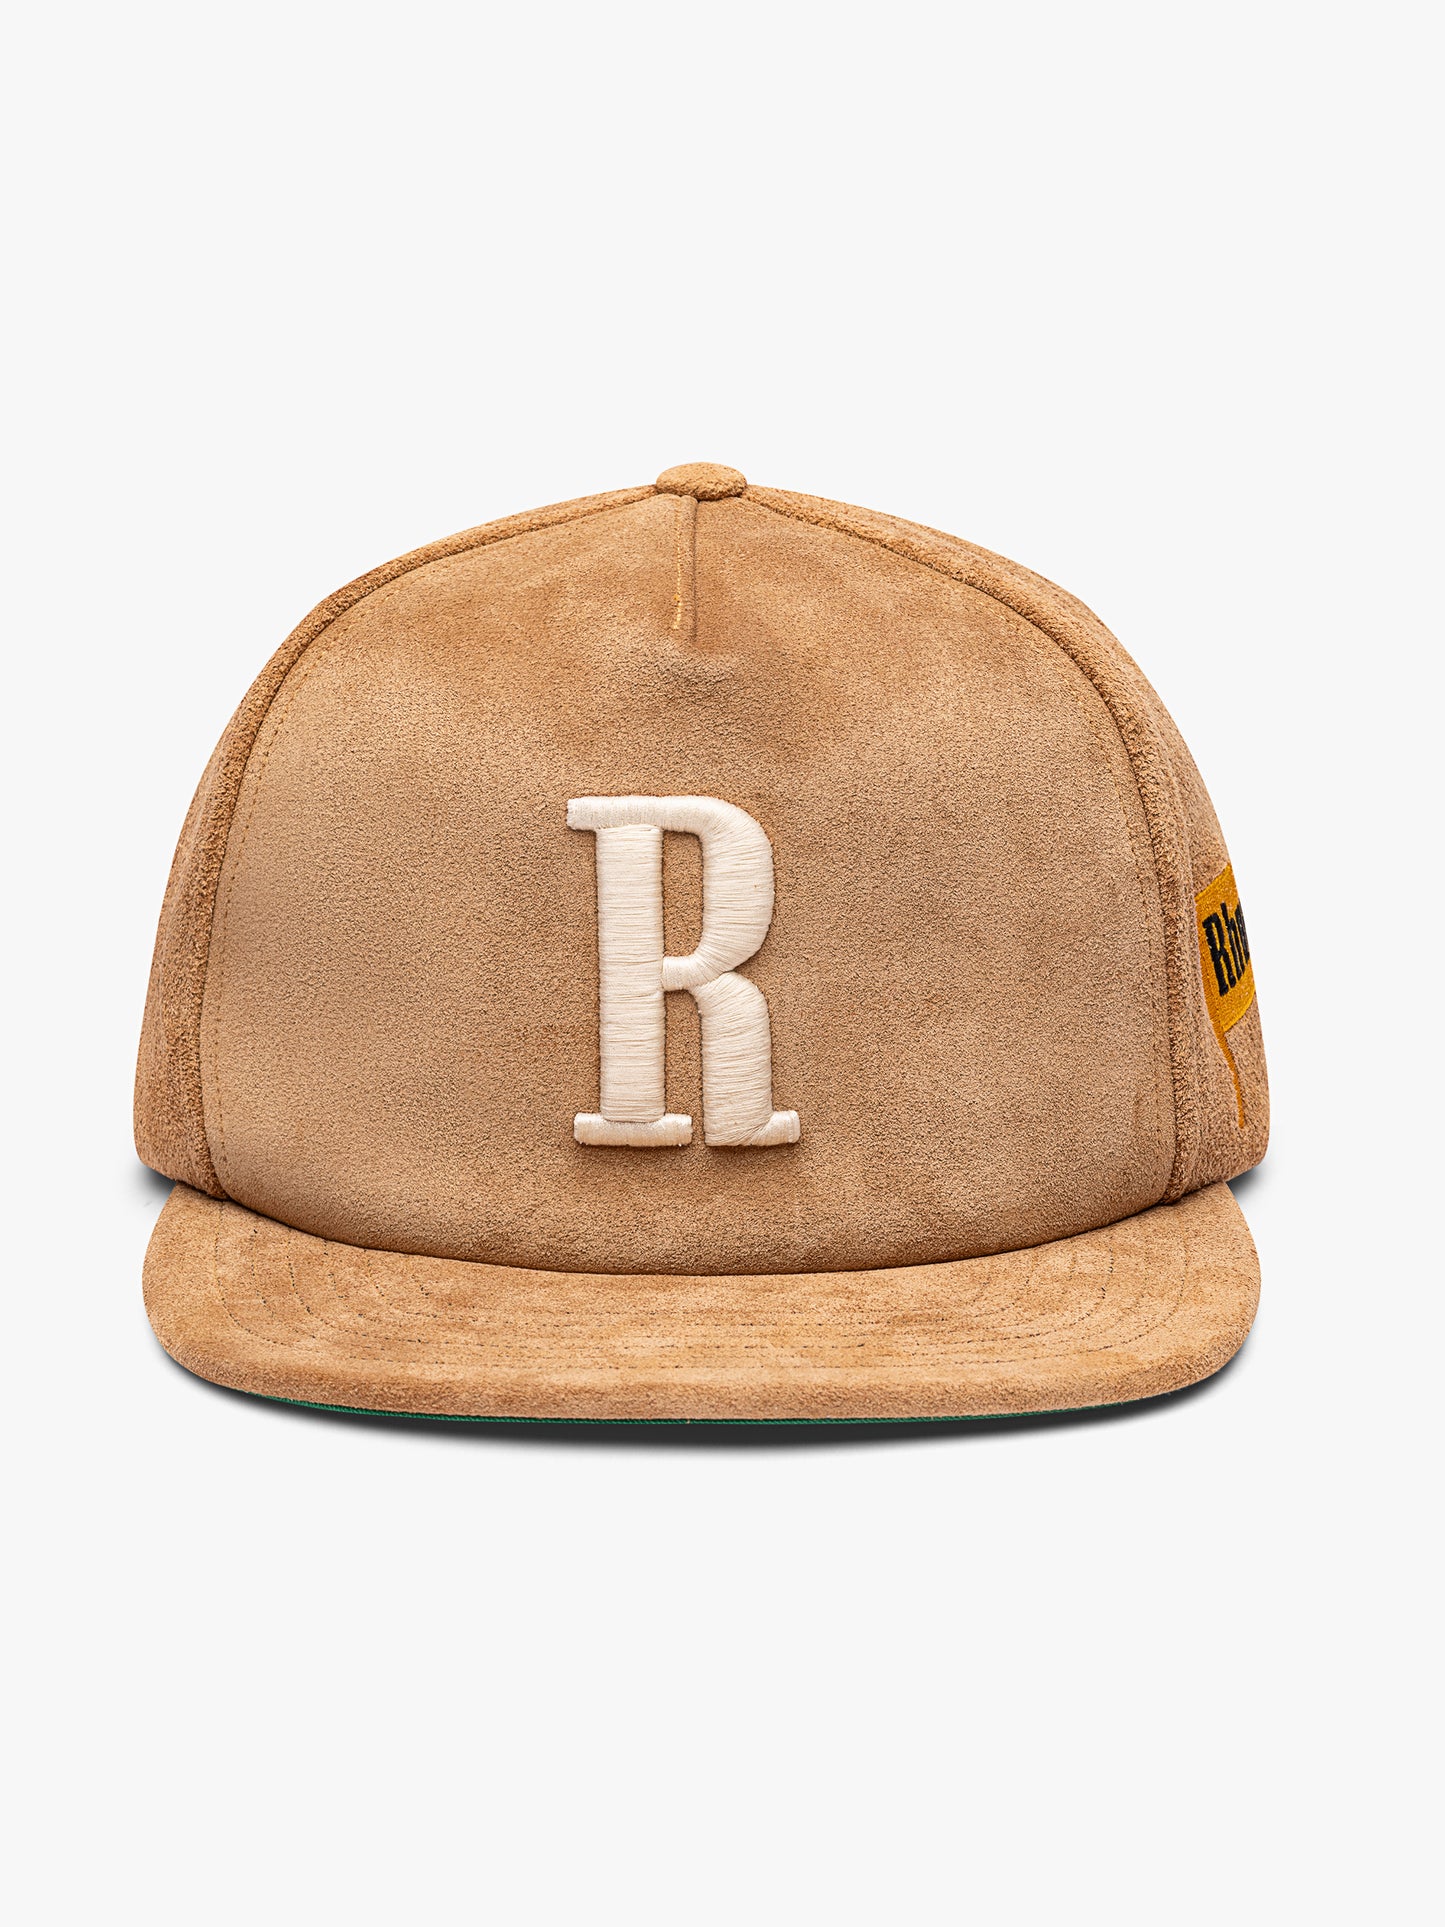 SUEDE "R" HAT